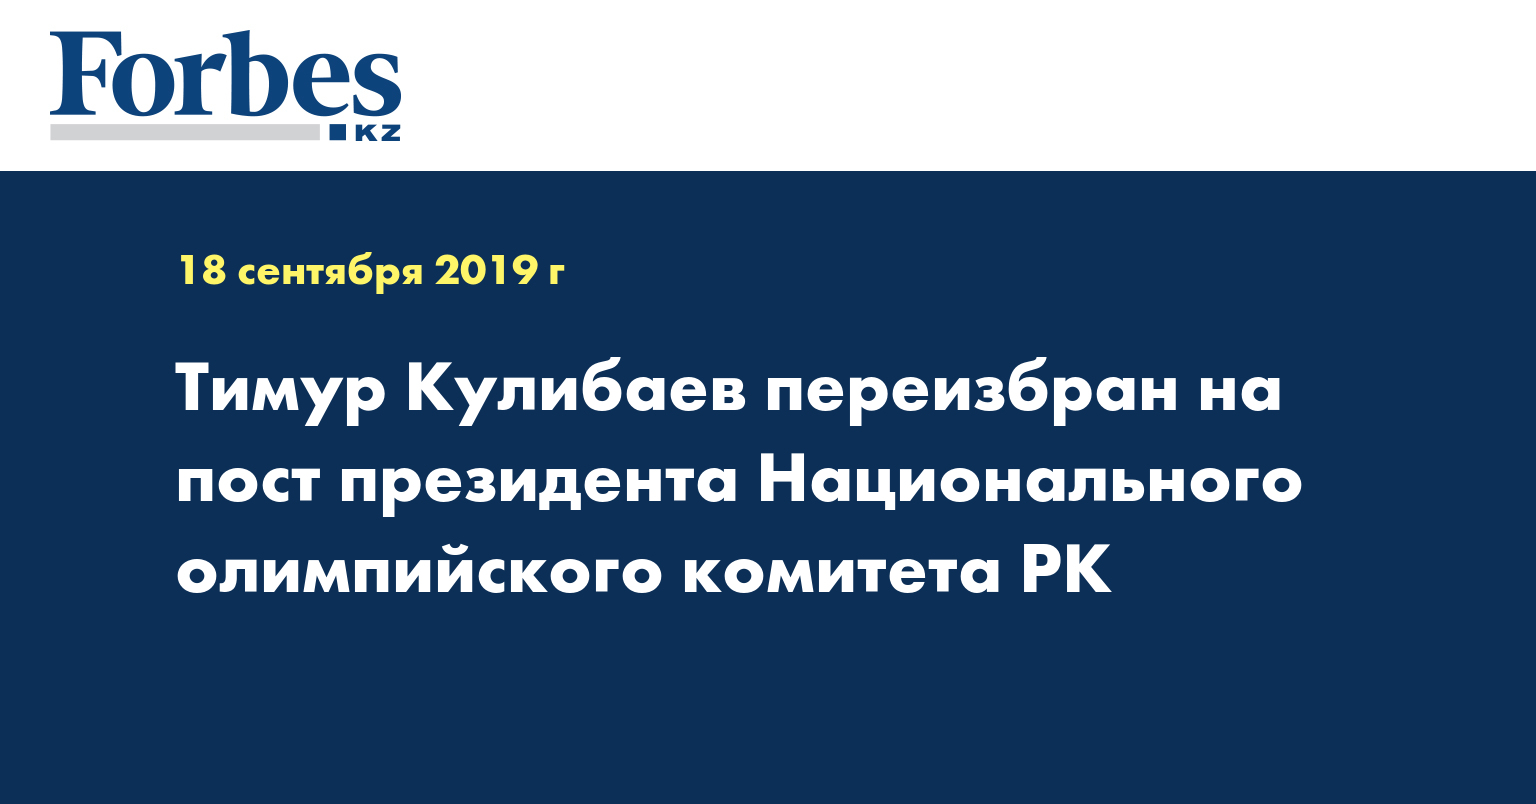 Тимур Кулибаев переизбран на пост президента Национального олимпийского комитета РК